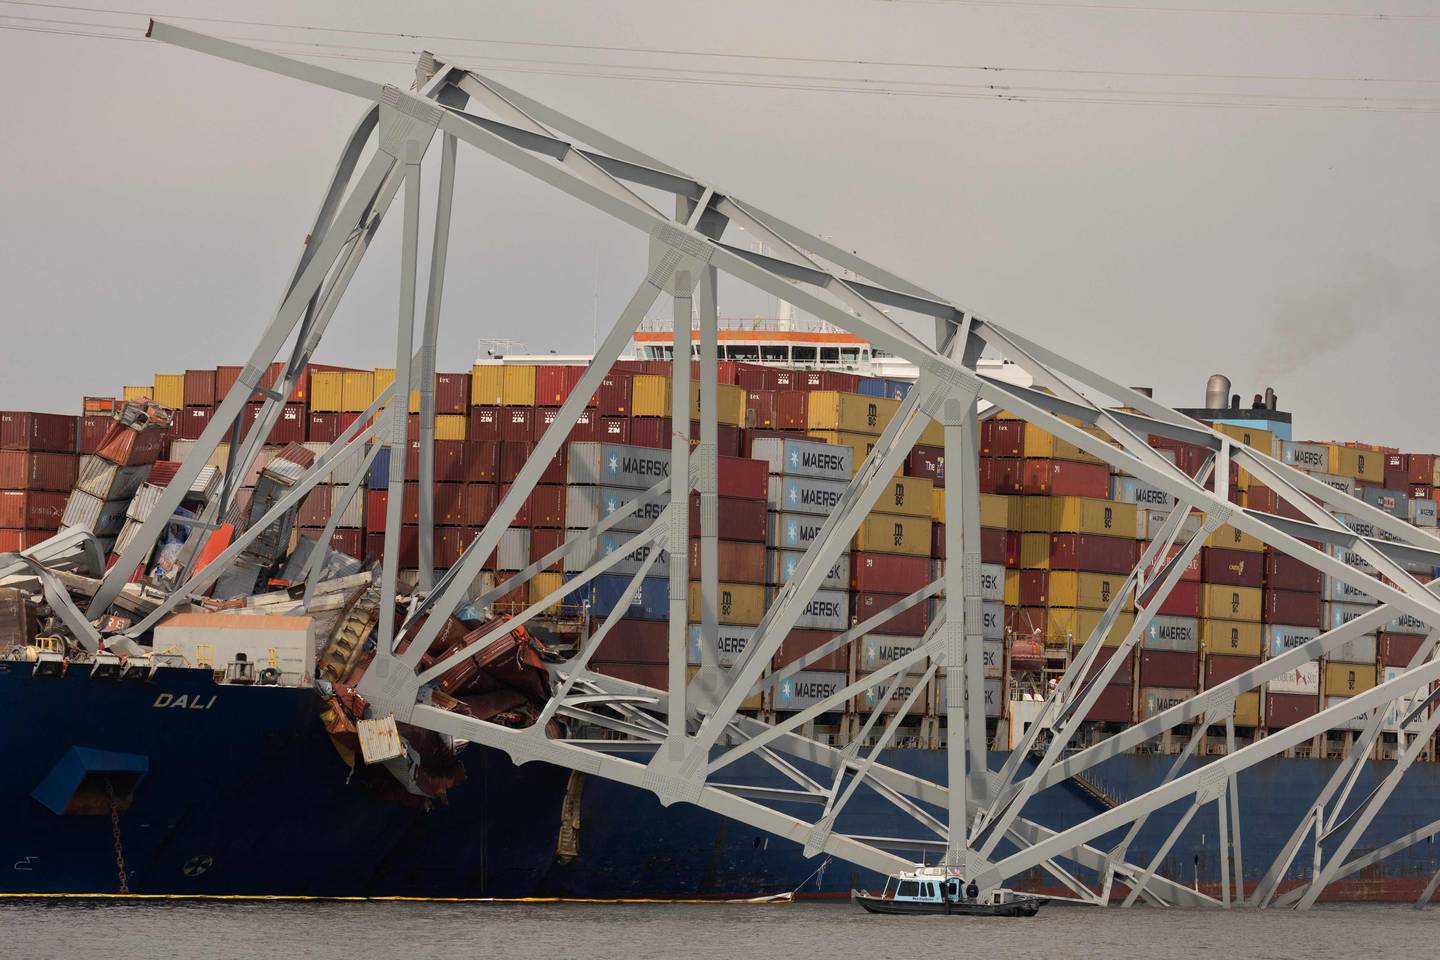 El puente, que era utilizado por aproximadamente 30.000 vehículos cada día, cayó al río Patapsco después de ser golpeado por el Dali, un carguero que partió del puerto alrededor de la 1:30 de la madrugada del martes.